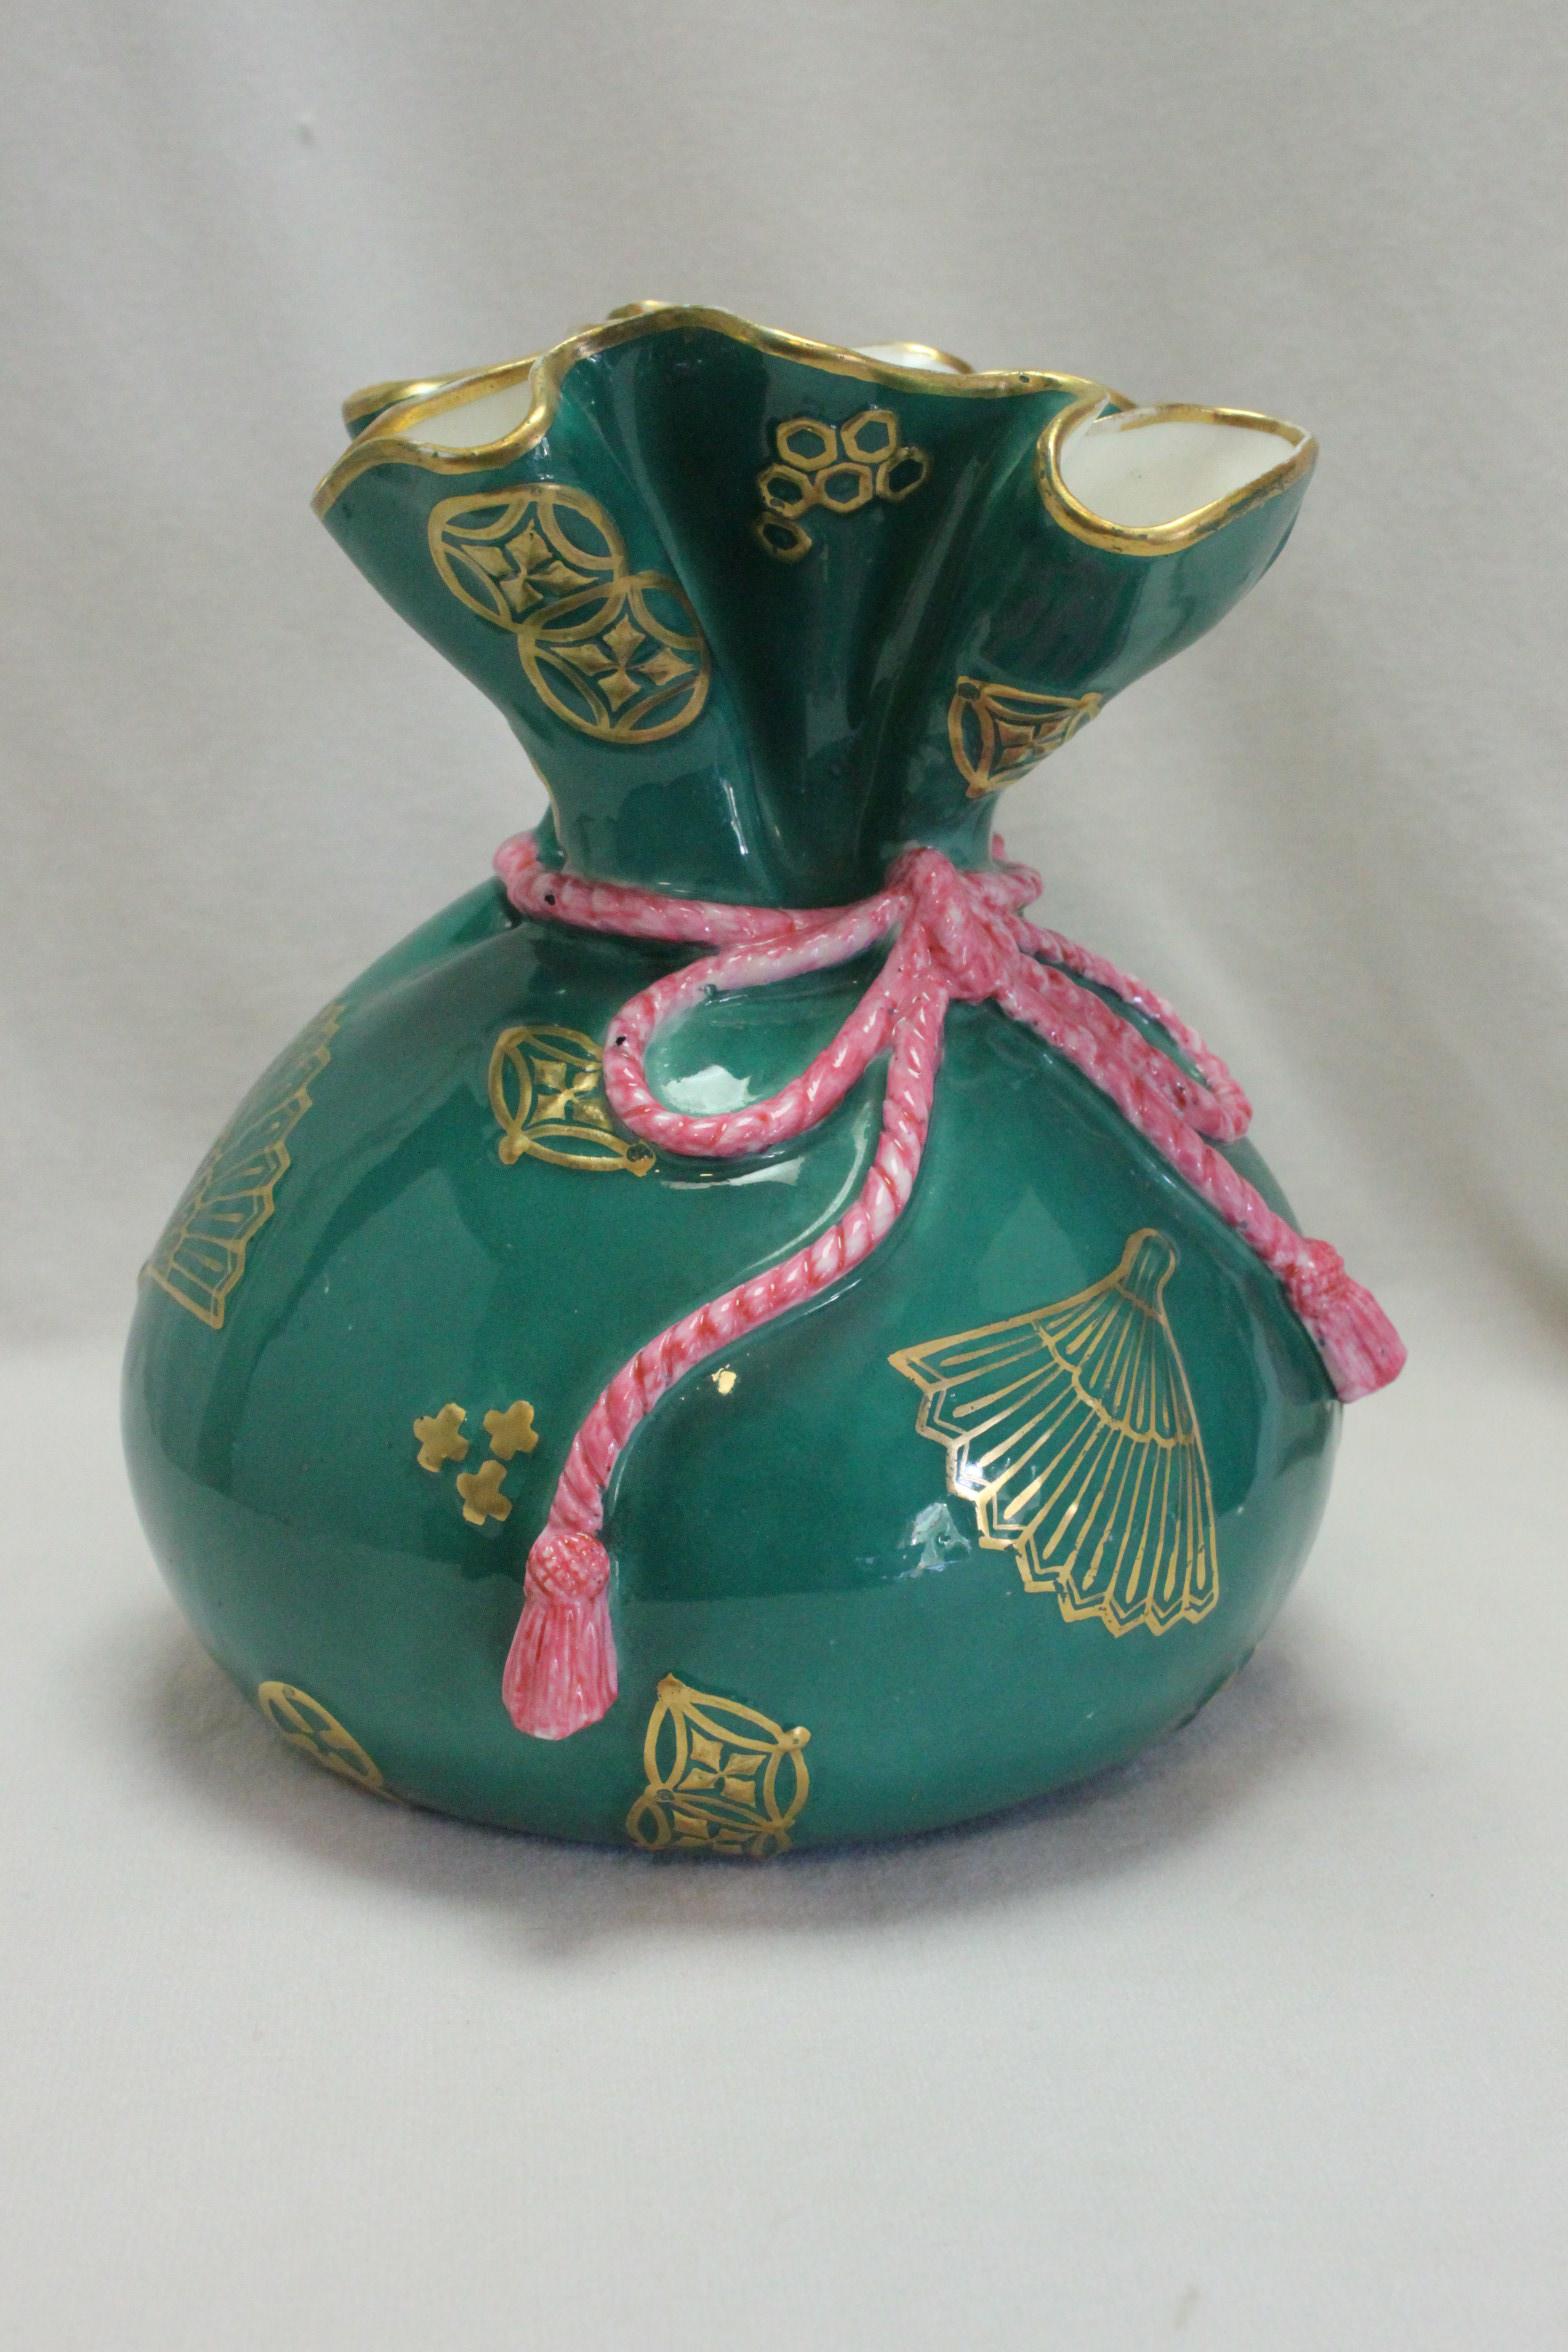 Ce vase Royal Worcester est un peu inhabituel car il a la forme d'un sac à main japonais à cordon - il s'agit probablement de la forme 381 qui a été émise en 1874 et décrite comme 